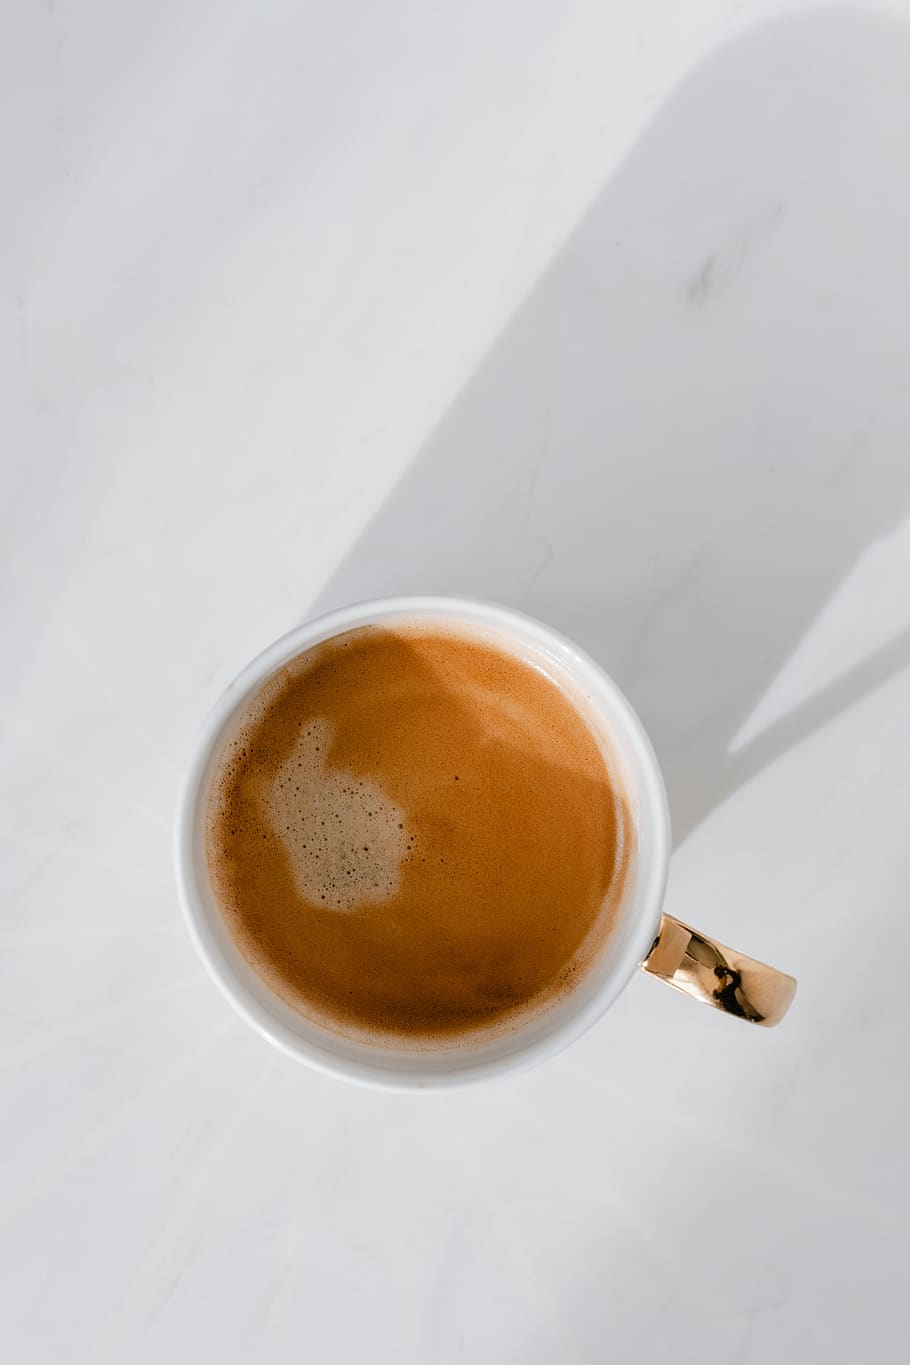 kopi, marmer, sederhana, minimal, pagi, tampilan atas, datar, flatlay, putih, Piala